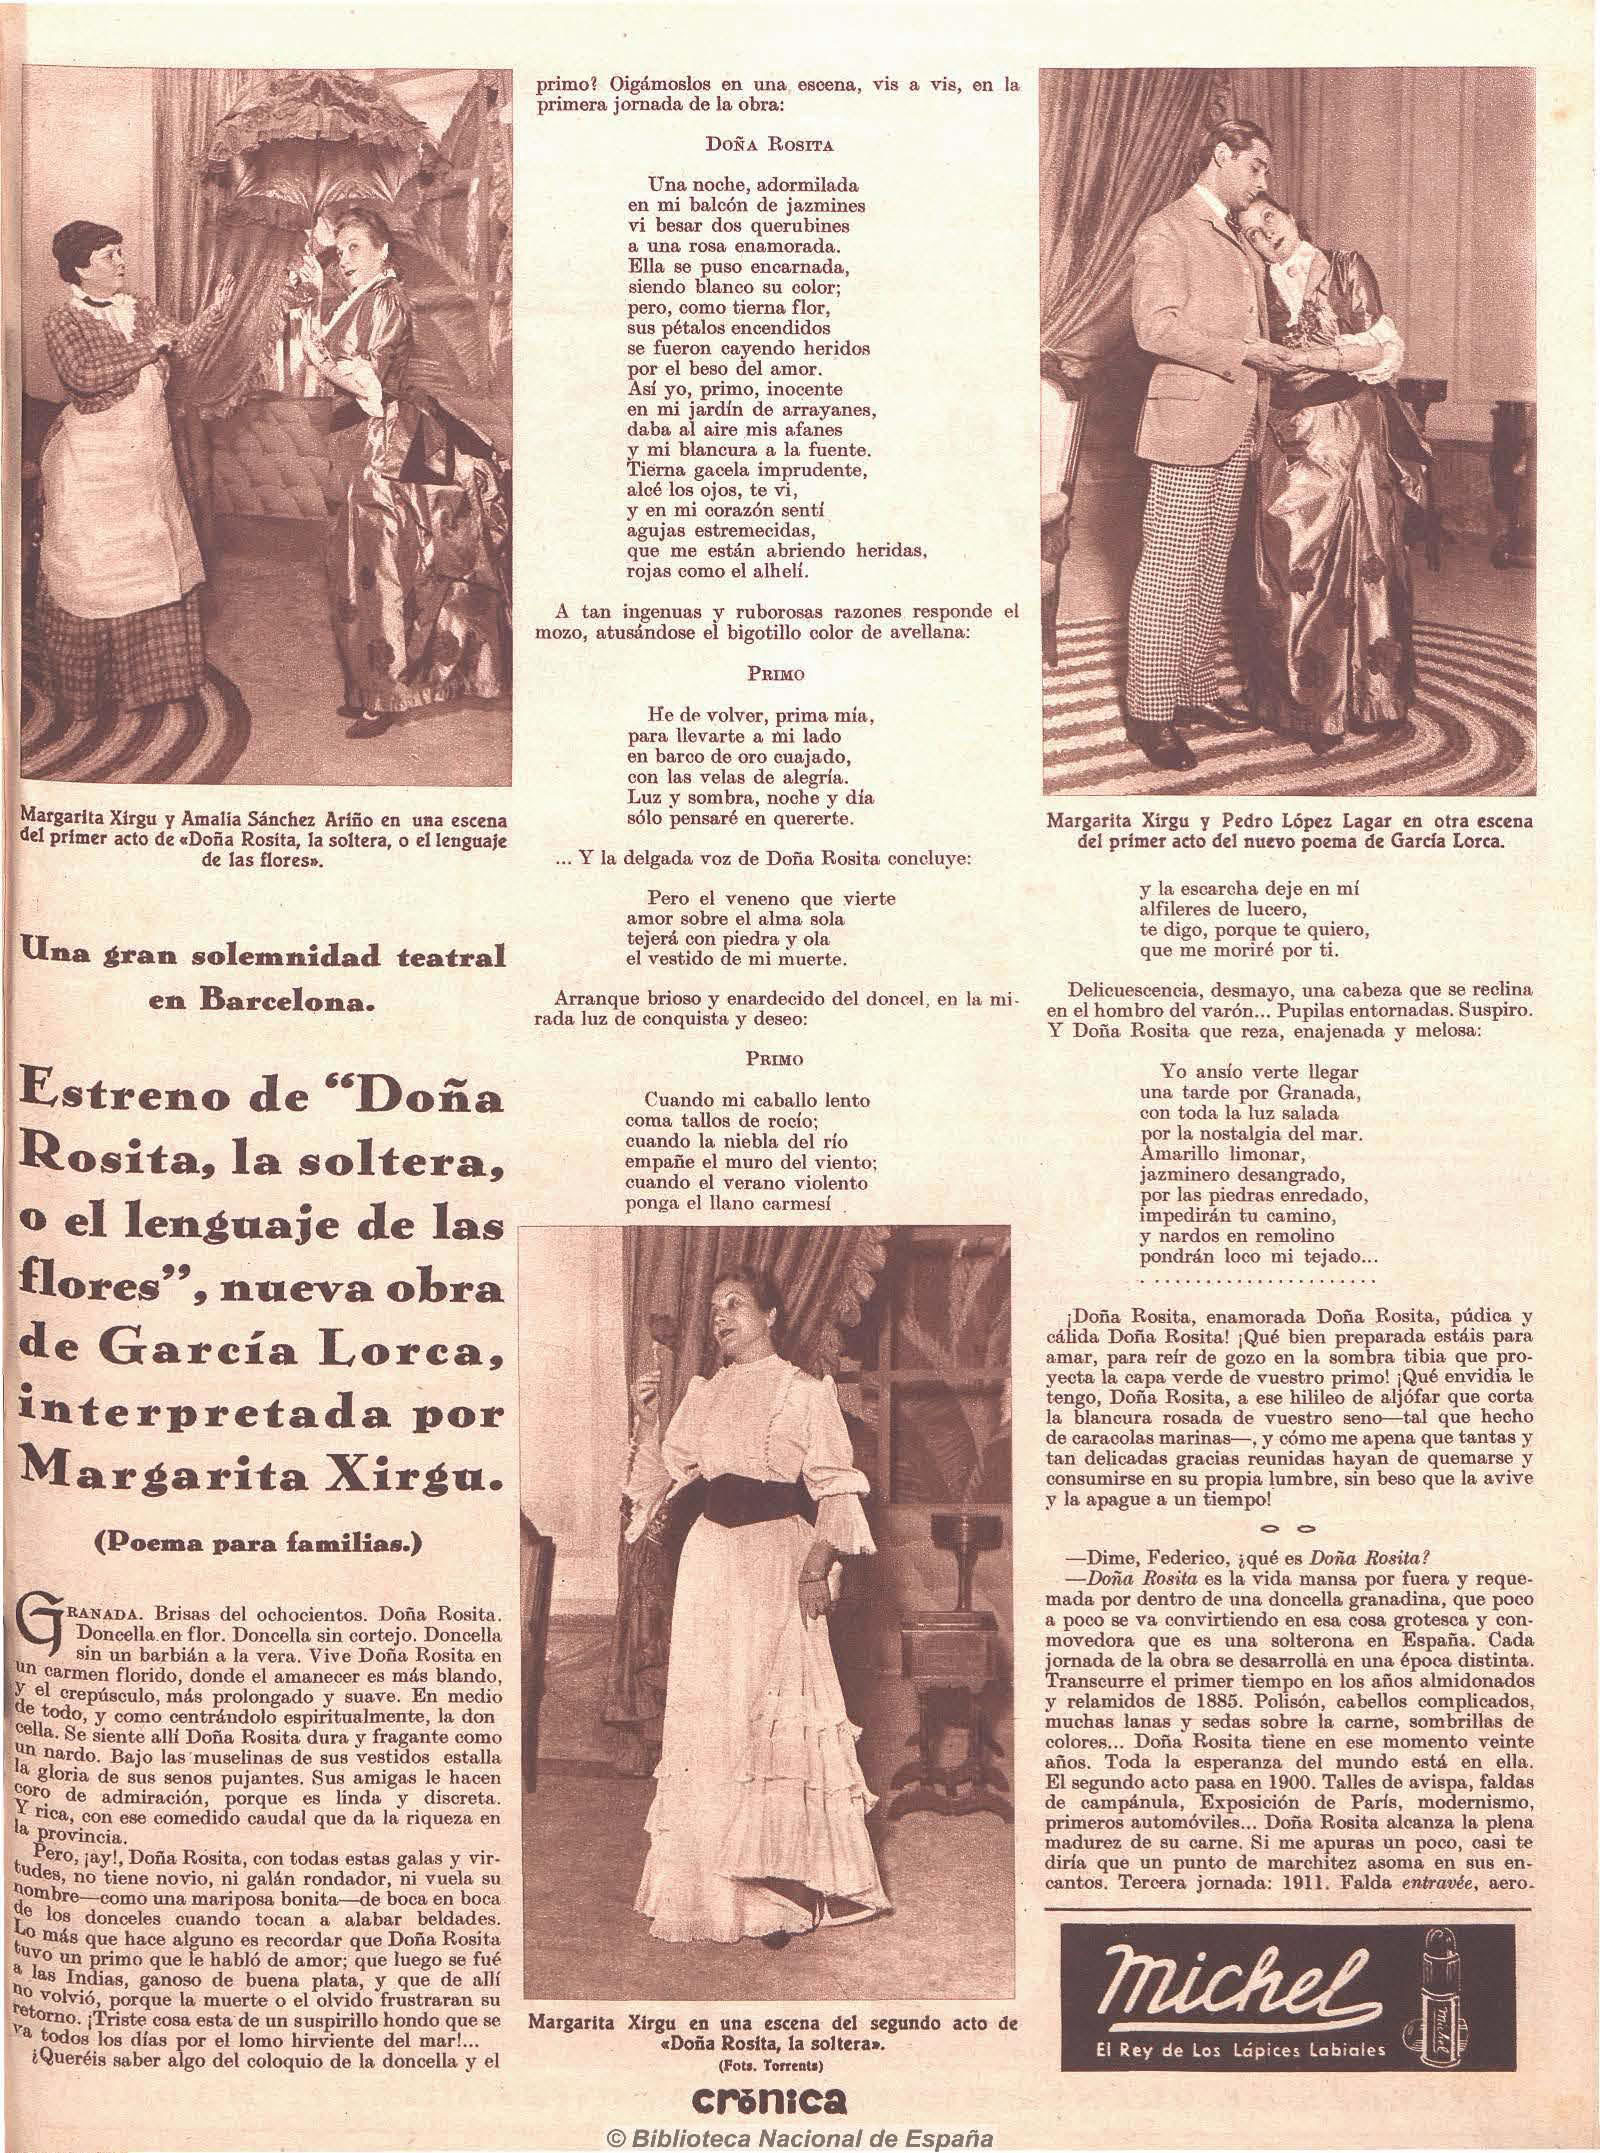 Crítica de l'estrena de Doña Rosita la soltera o el lenguaje de las flores, de Federico García Lorca, estrenada per la Compañía Margarita Xirgu el 13 de desembre de 1935 al Teatre Principal de Barcelona, publicada al diari Crónica, el 15 de desembre de 1935